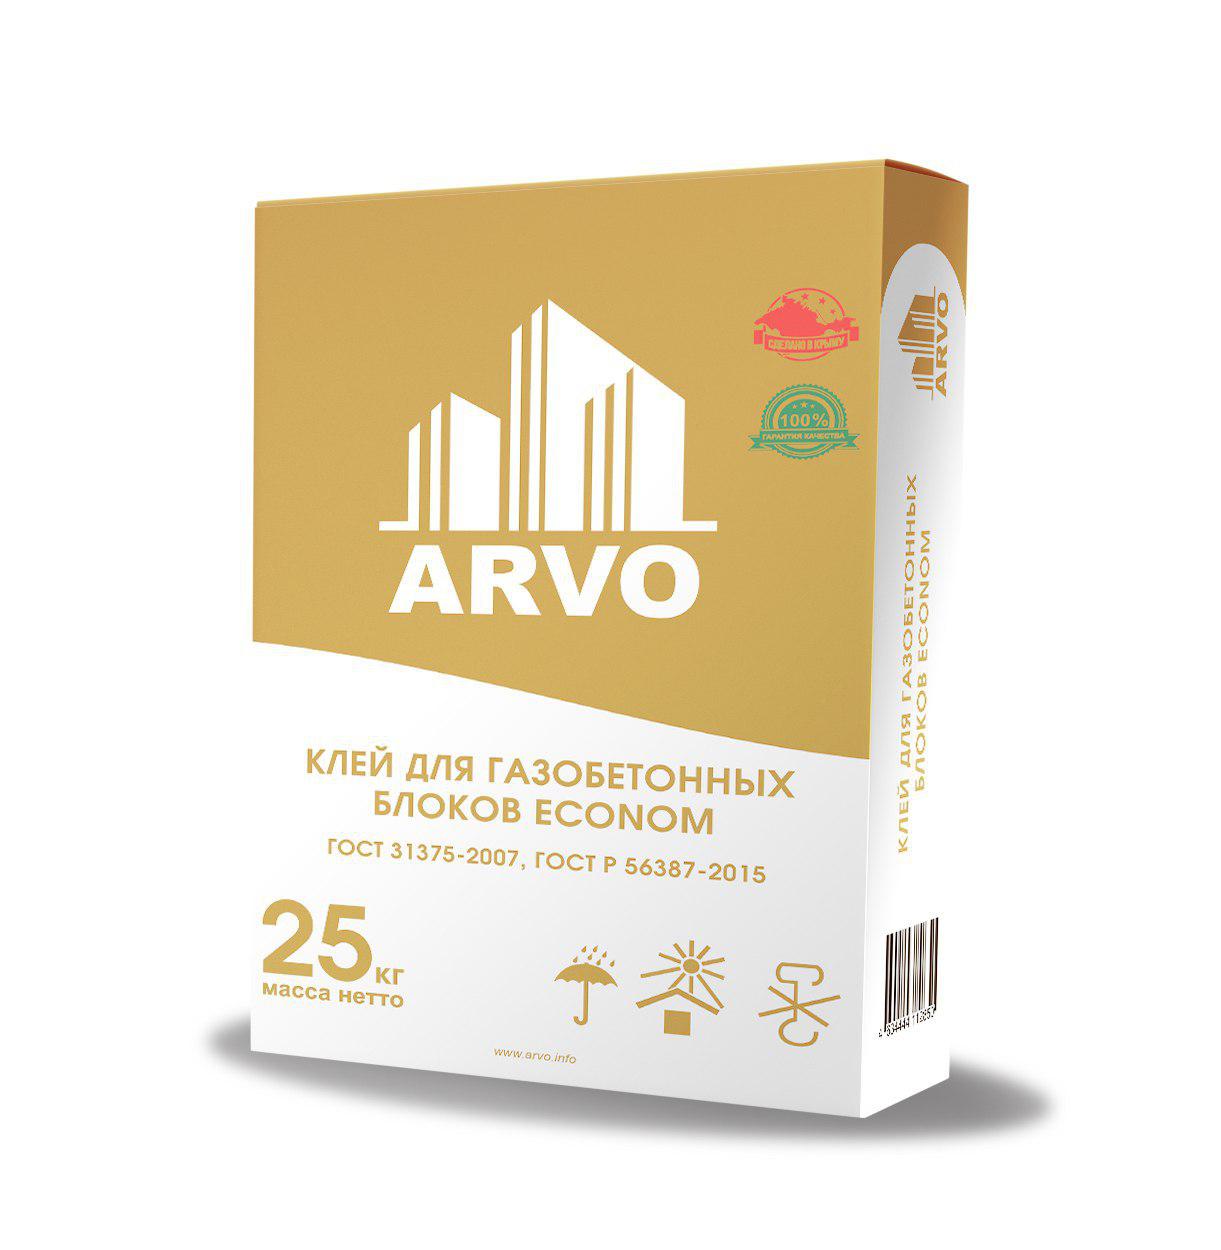 Купить клей для газобетонных. Клей Arvo 25кг. Клей для газобетонных блоков Arvo. Клей Arvo 25кг для плит. Клей Arvo 25кг для теплоизоляционных плит.